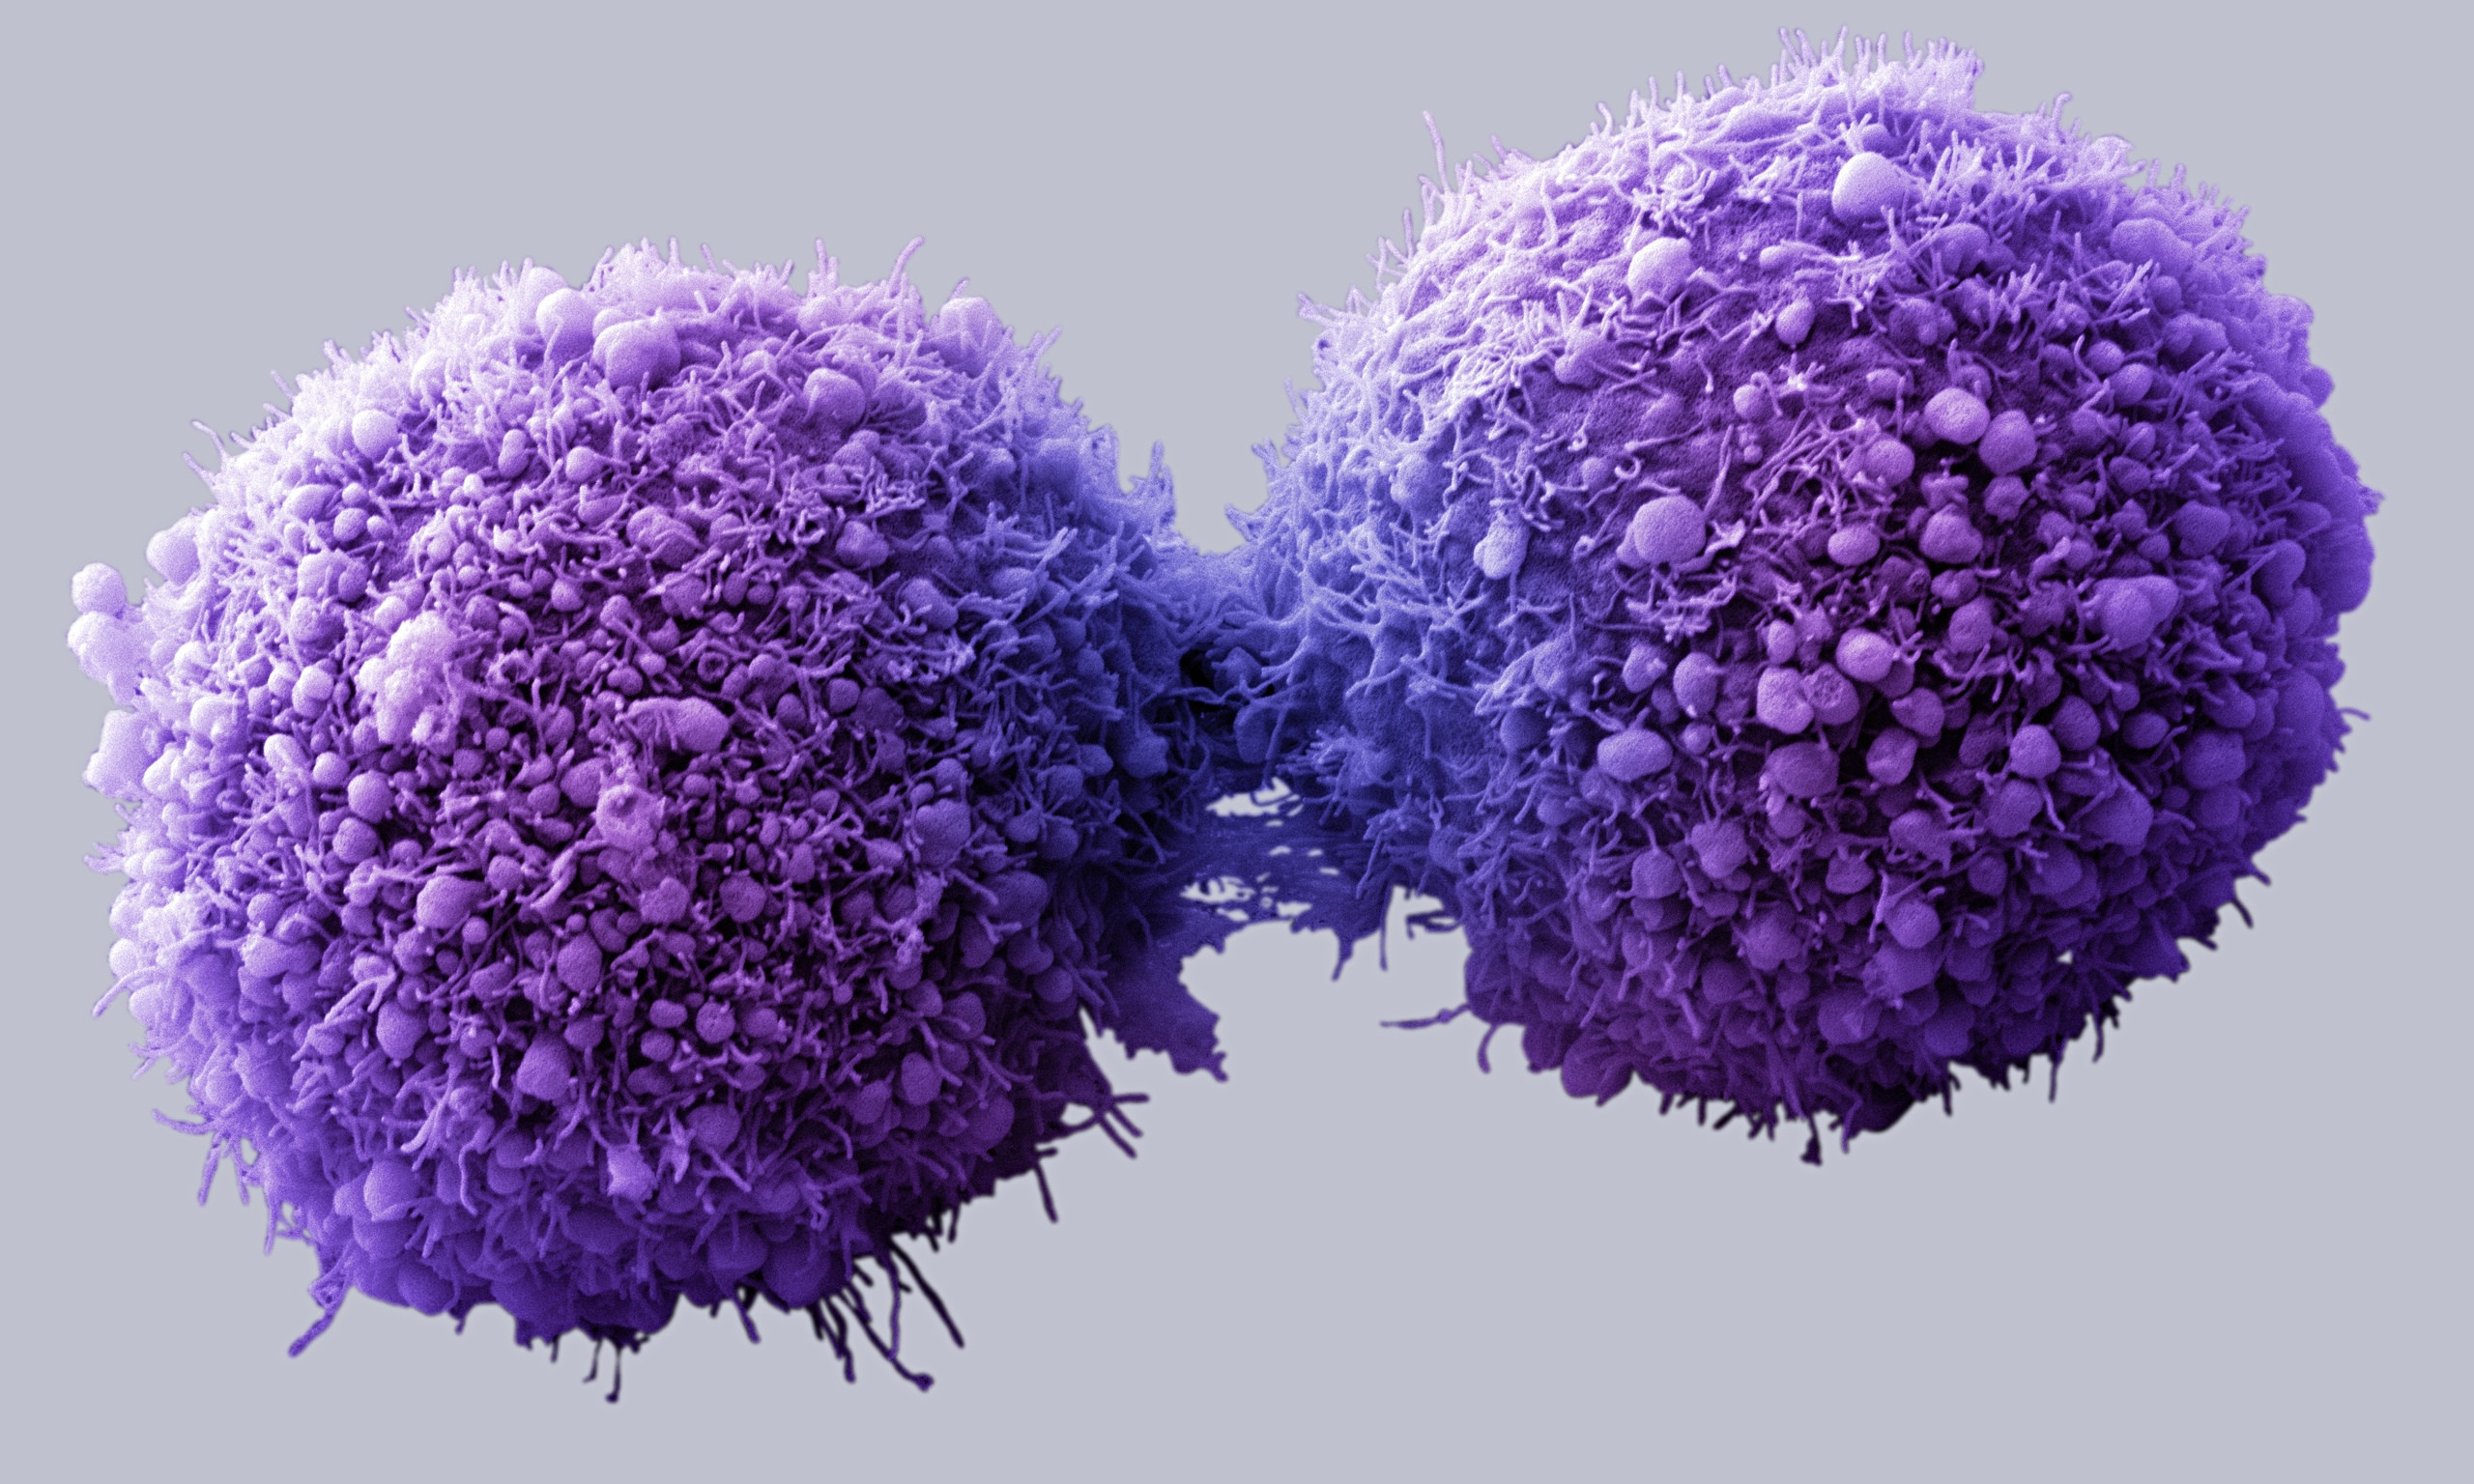 Αυτόνομα νανορομπότ εξοντώνουν καρκινικούς όγκους